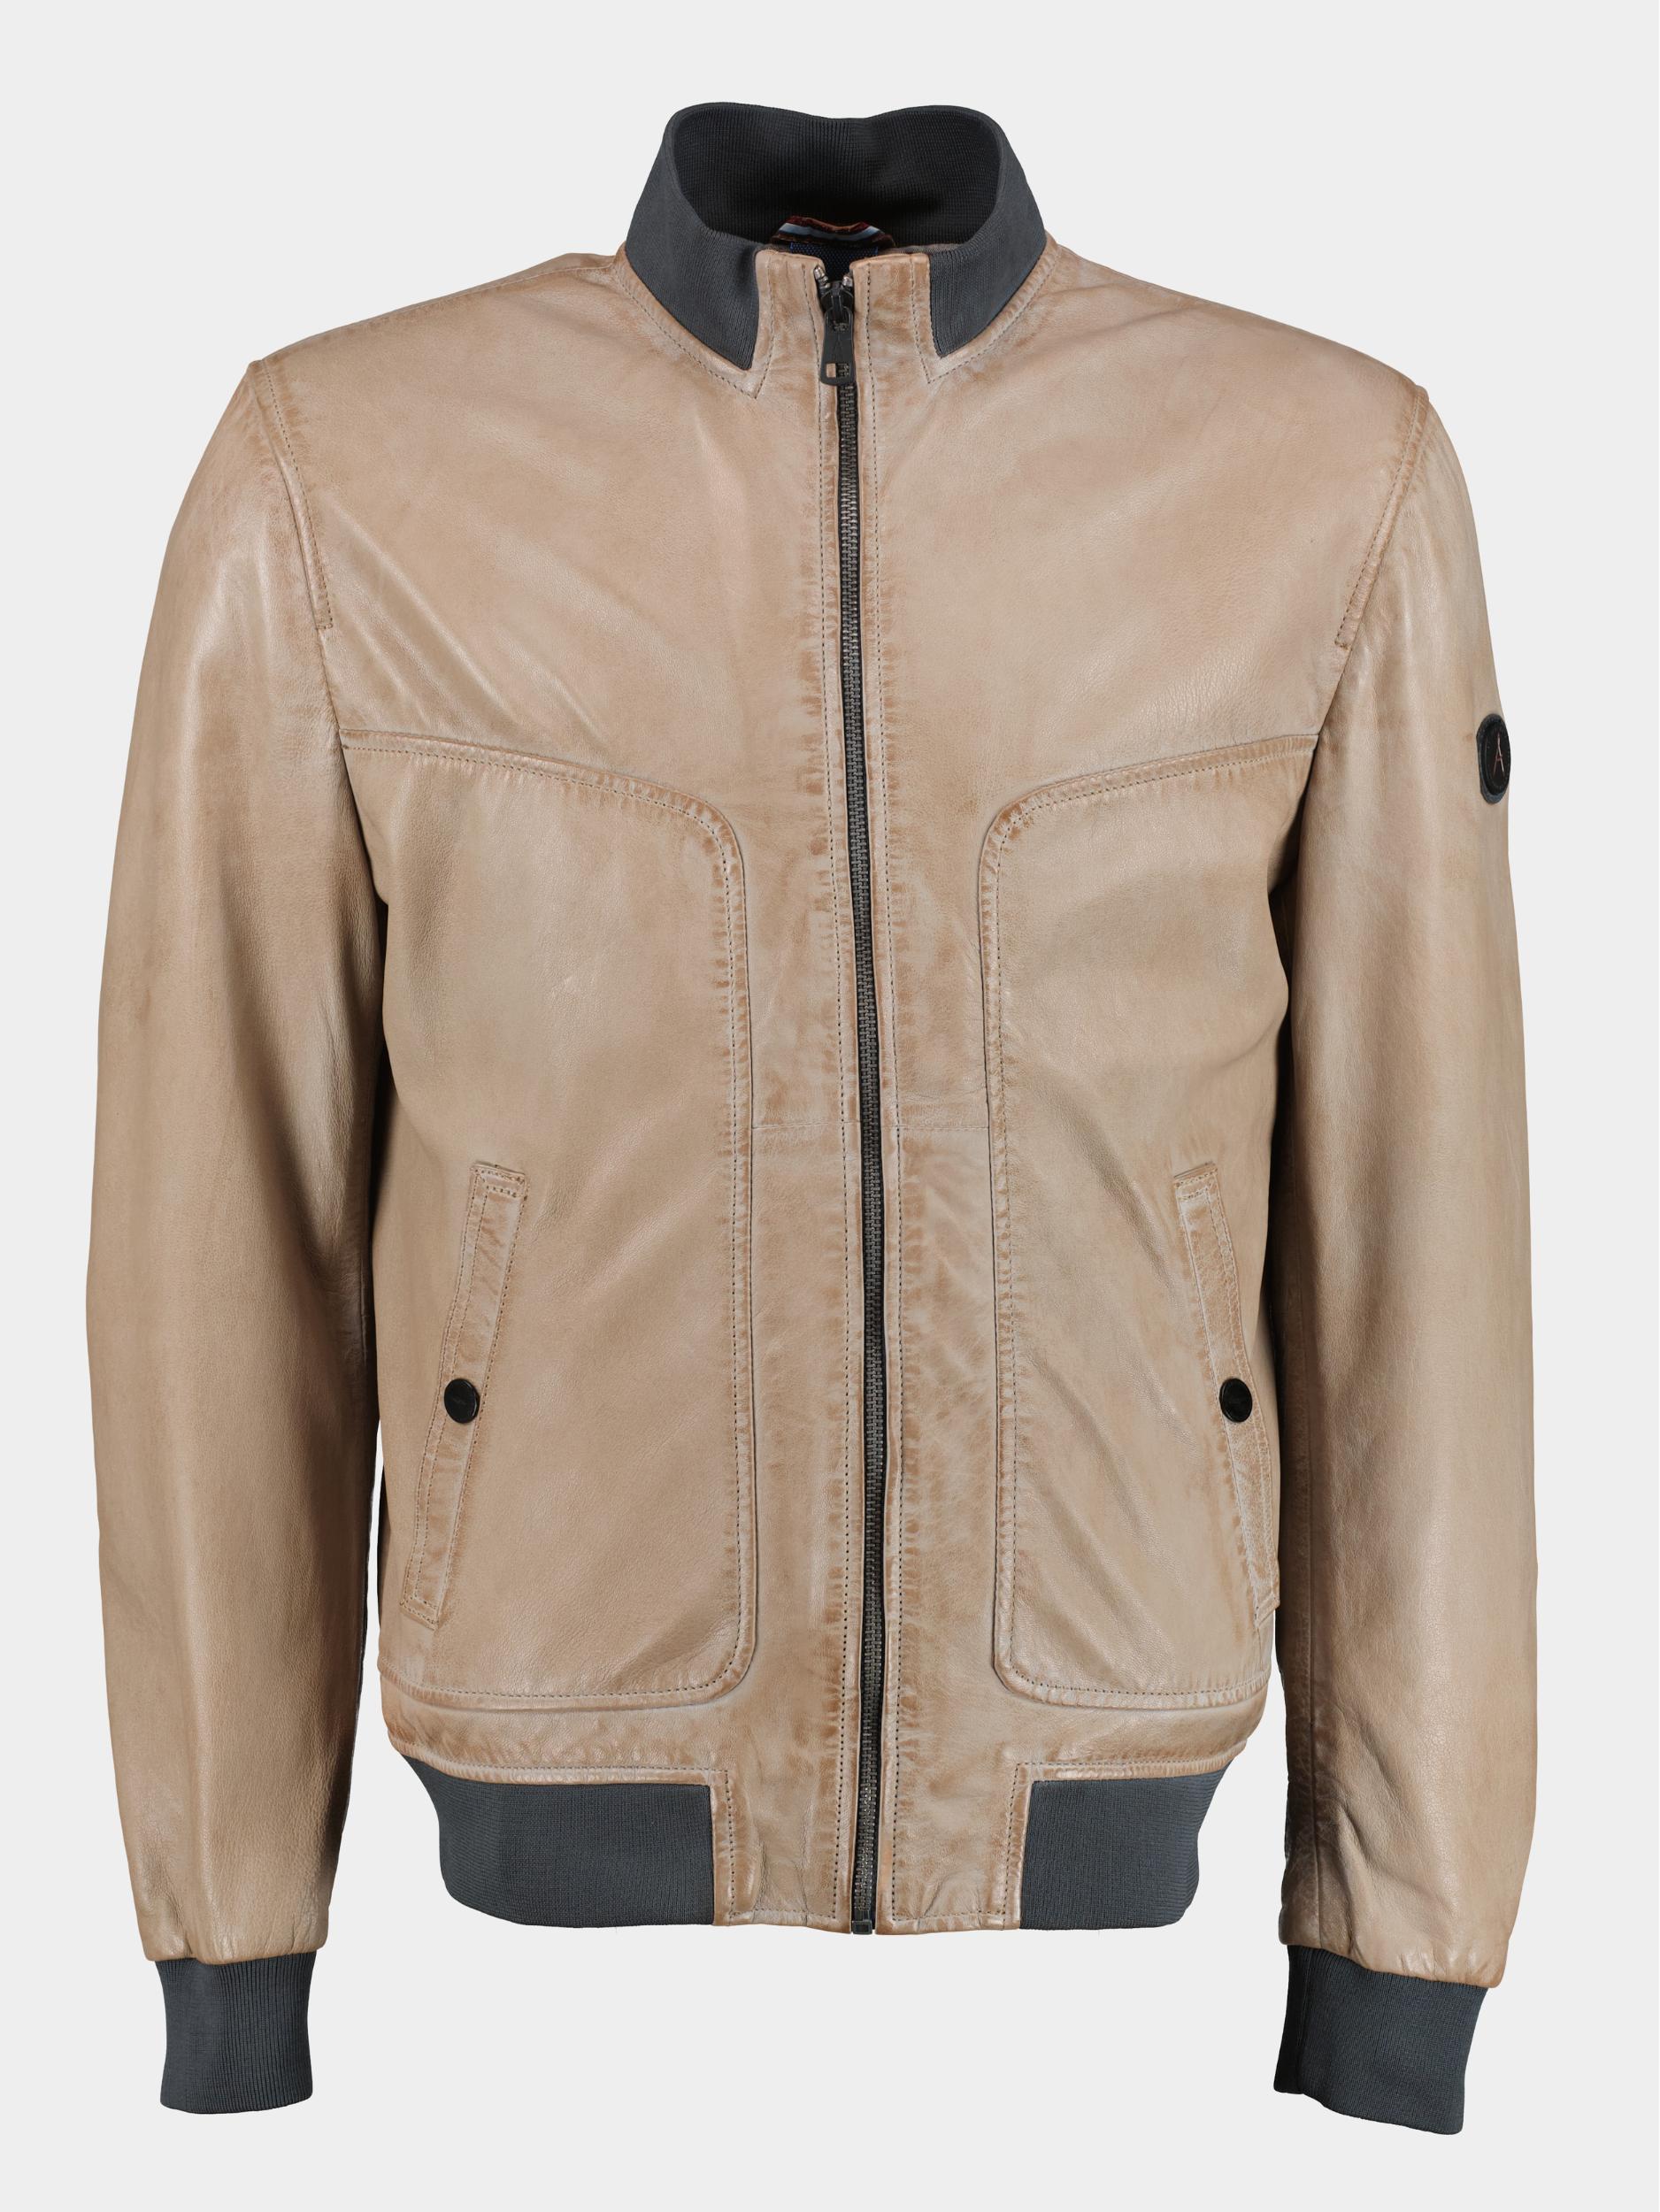 Afbeelding van DNR Lederen jack bruin leather jacket 52359/3